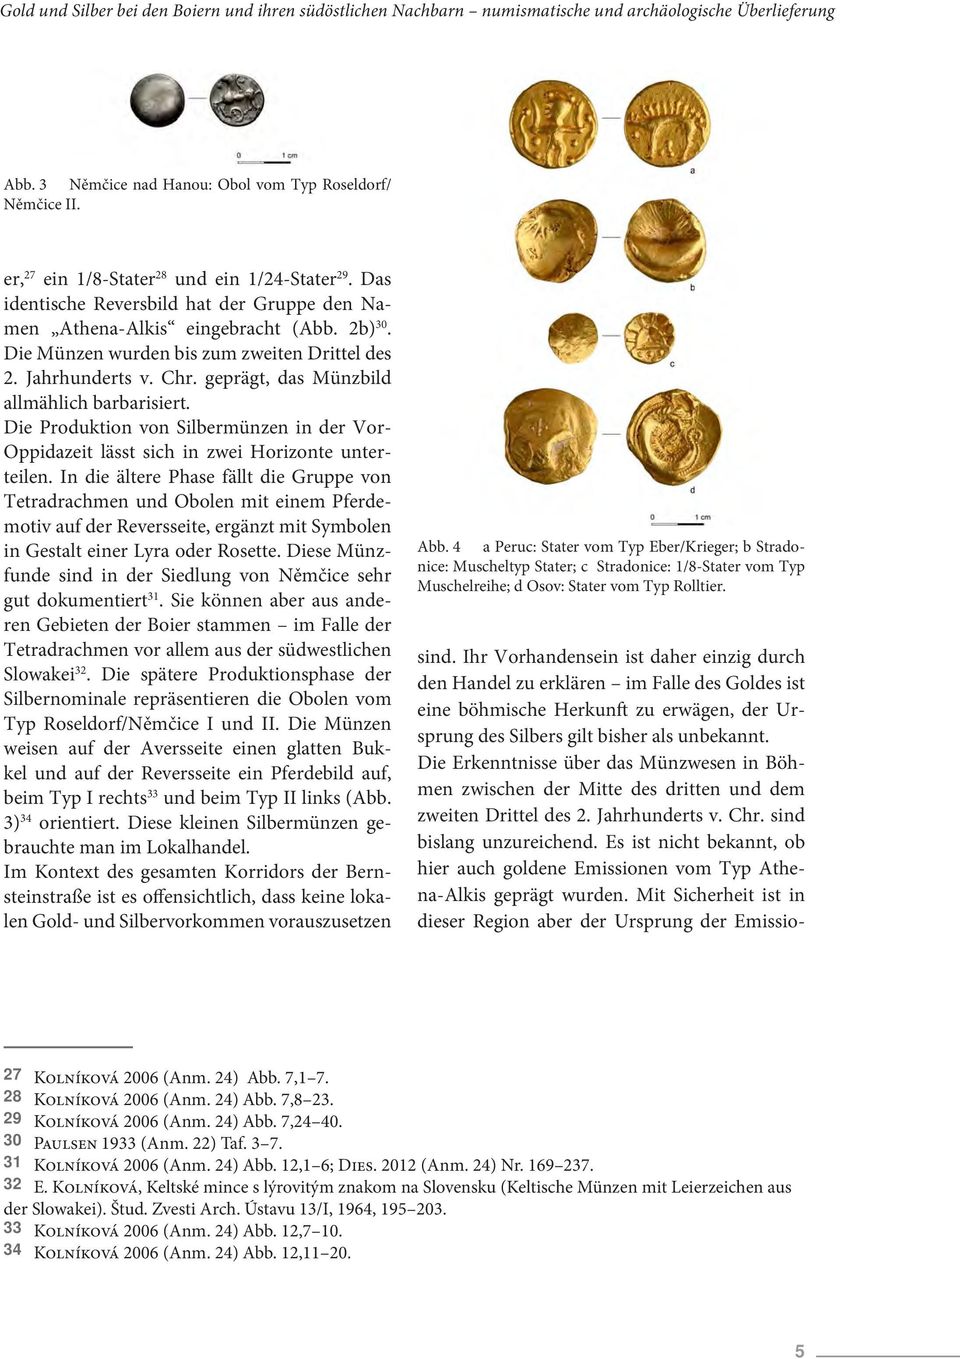 Jahrhunderts v. Chr. geprägt, das Münzbild allmählich barbarisiert. Die Produktion von Silbermünzen in der Vor- Oppidazeit lässt sich in zwei Horizonte unterteilen.